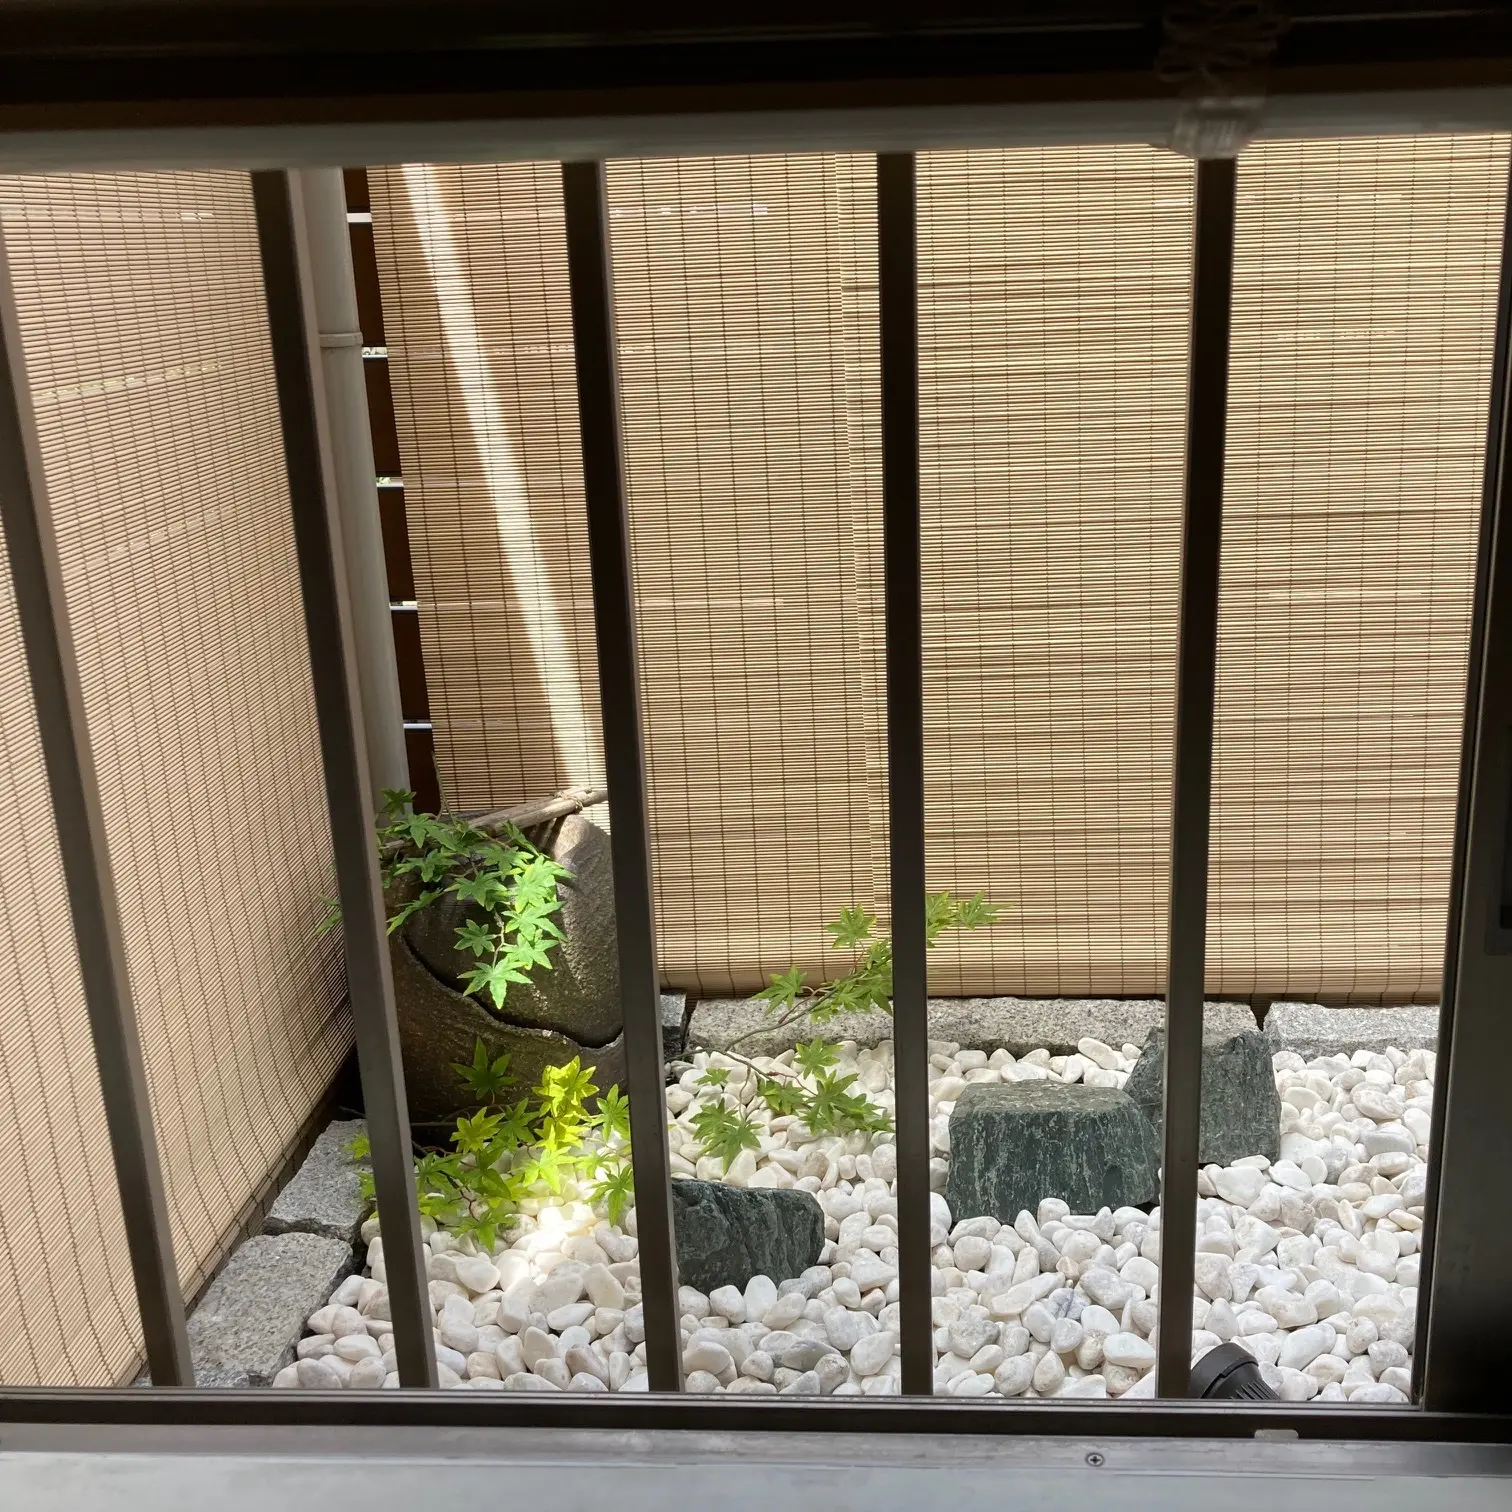 窓から見える玉砂利の小さな坪庭